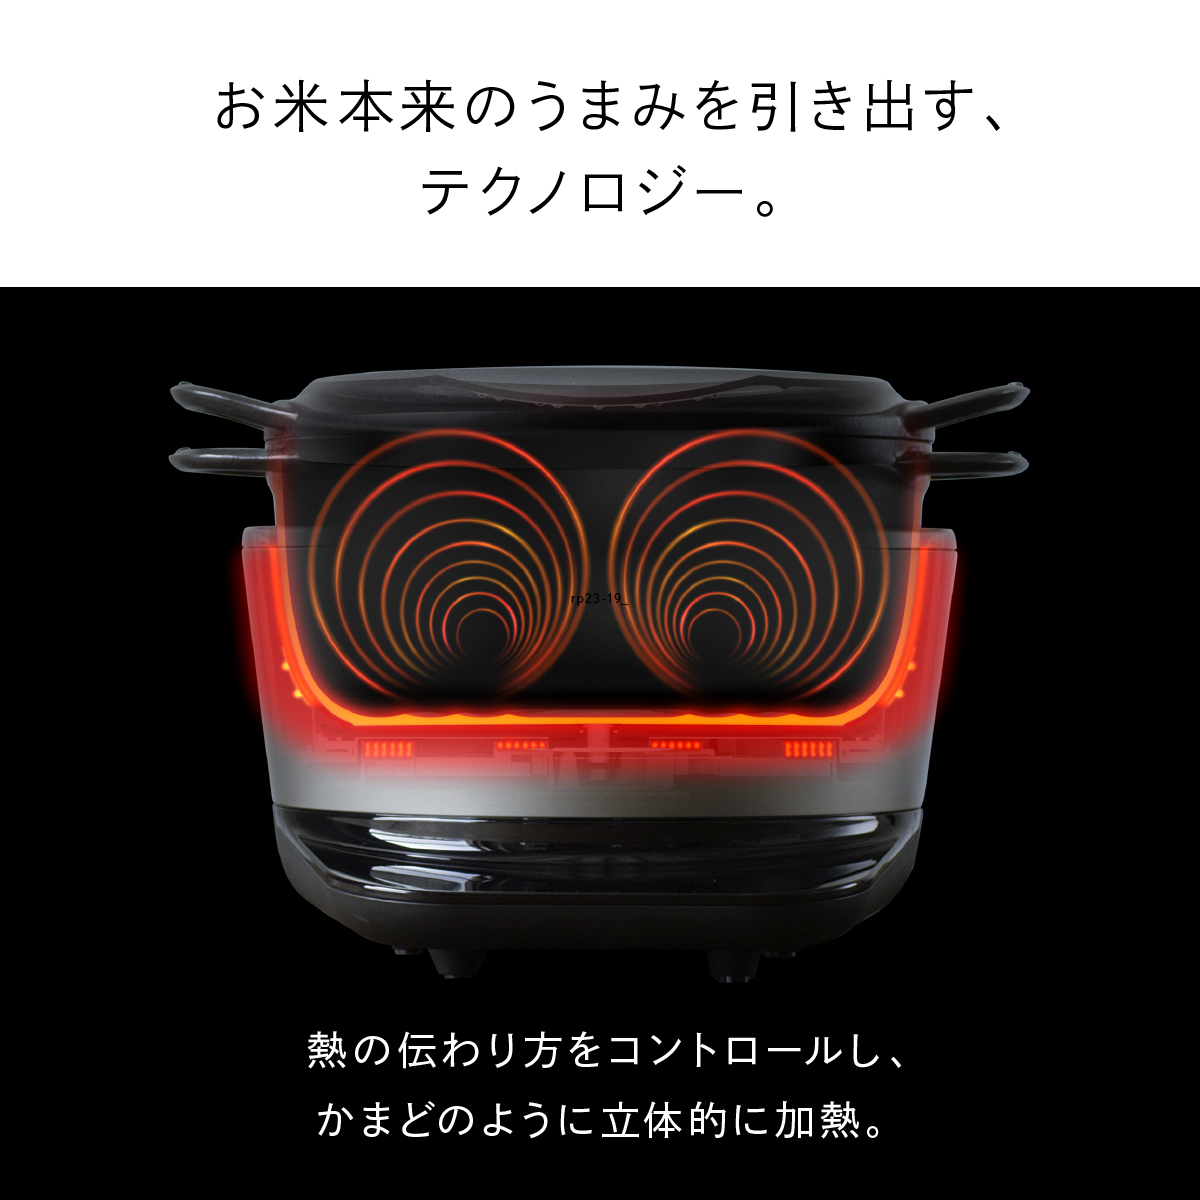 【楽天市場】【公式】バーミキュラ ライスポット 5合炊き 炊飯器